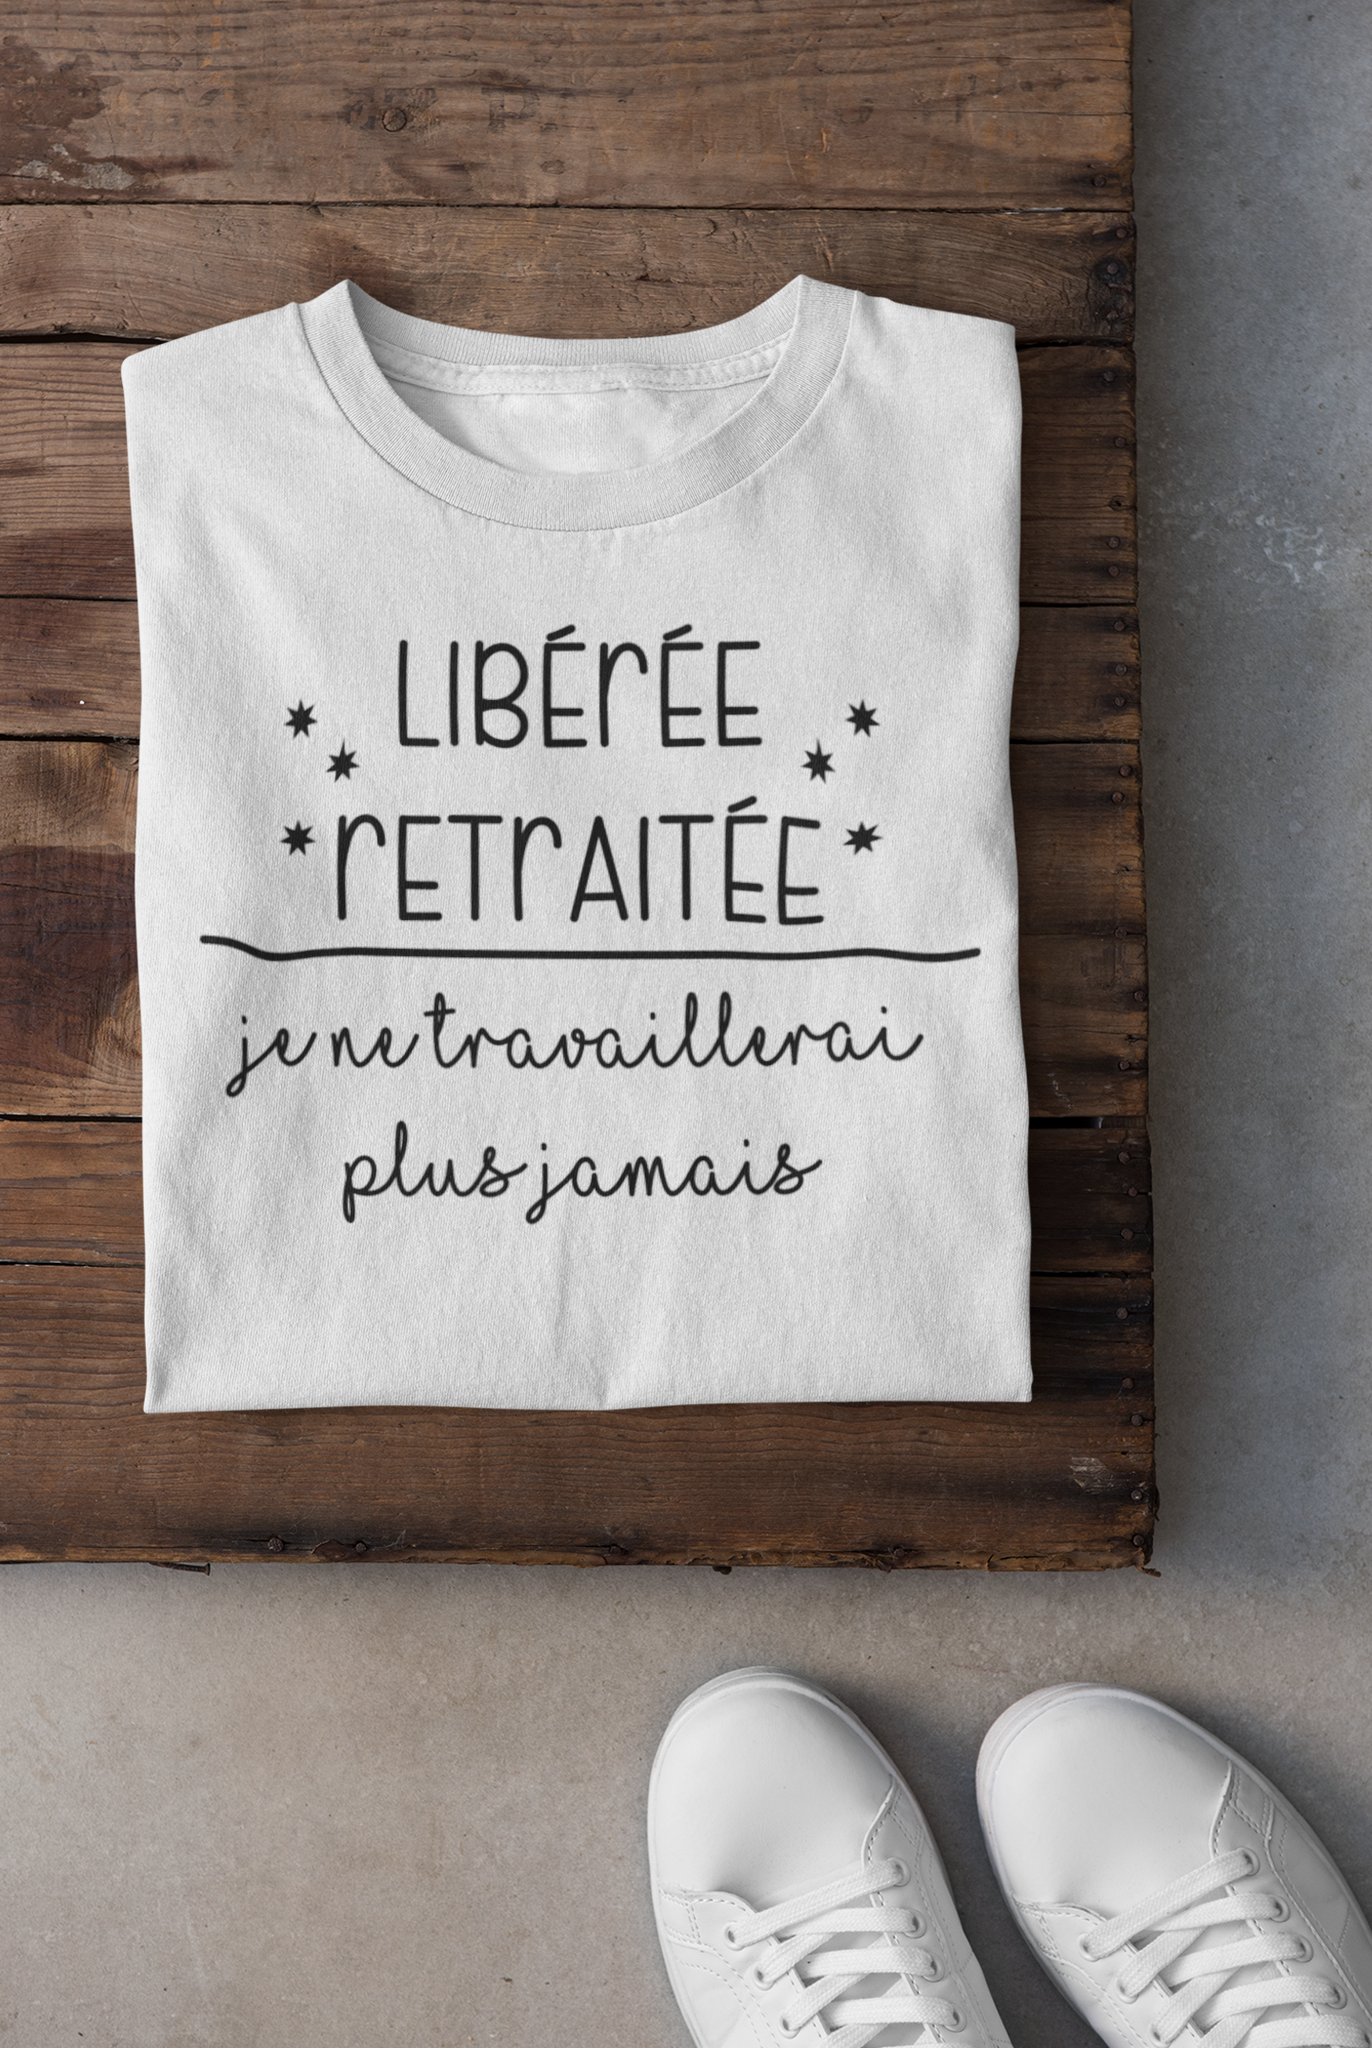 T-shirt - Libérée retraitée, je ne travaillerai plus jamais